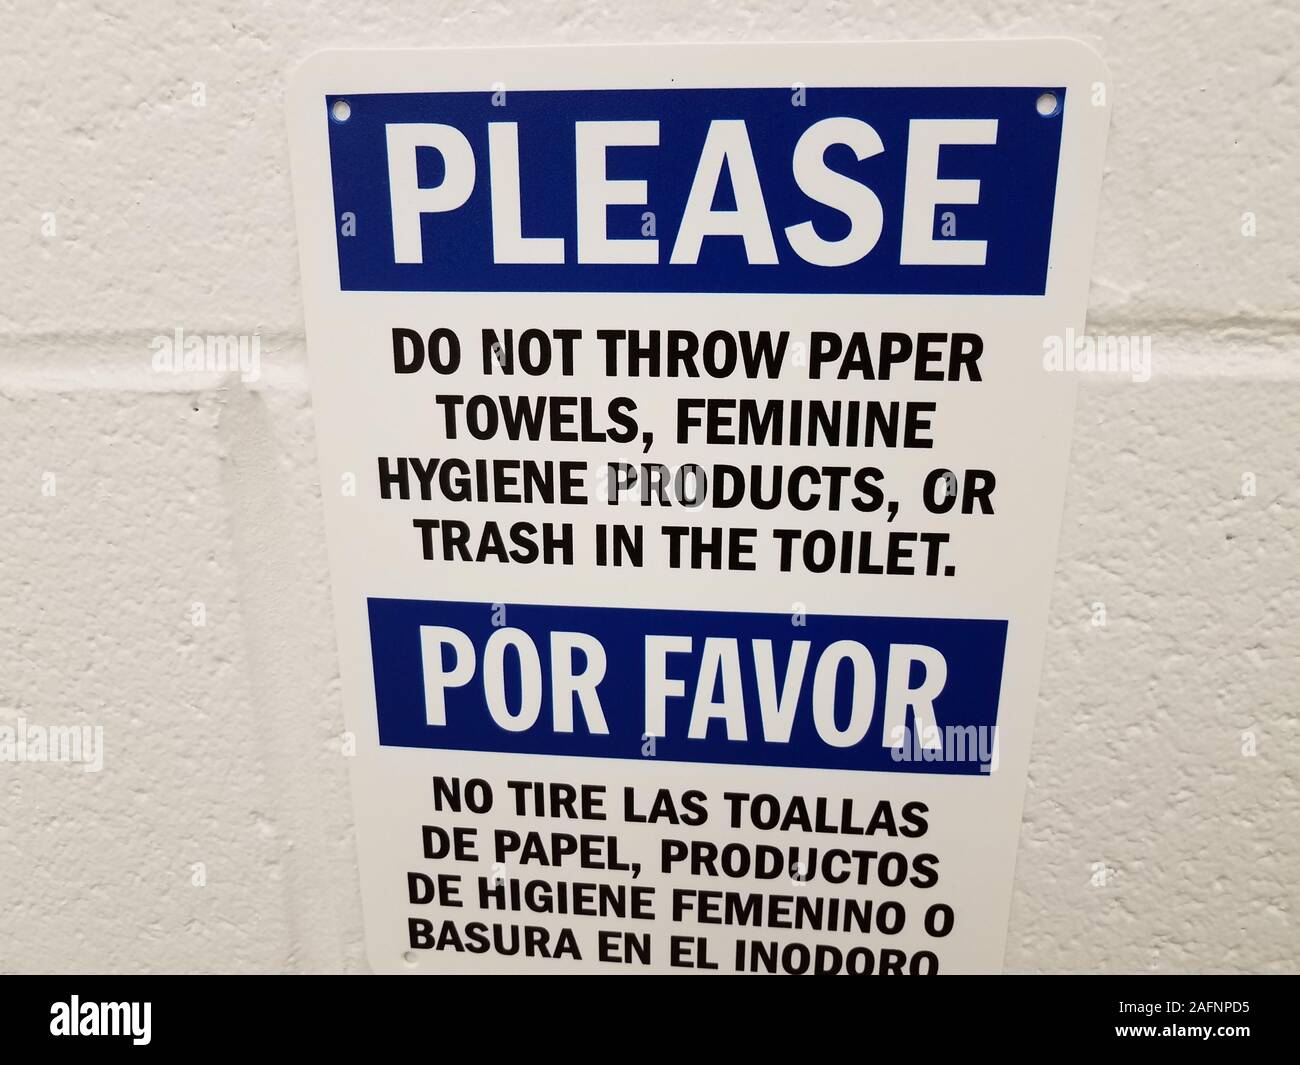 Bitte keine Papiertücher in Wc schild in Englisch und Spanisch auf Bad oder  Toilette Wand werfen Stockfotografie - Alamy